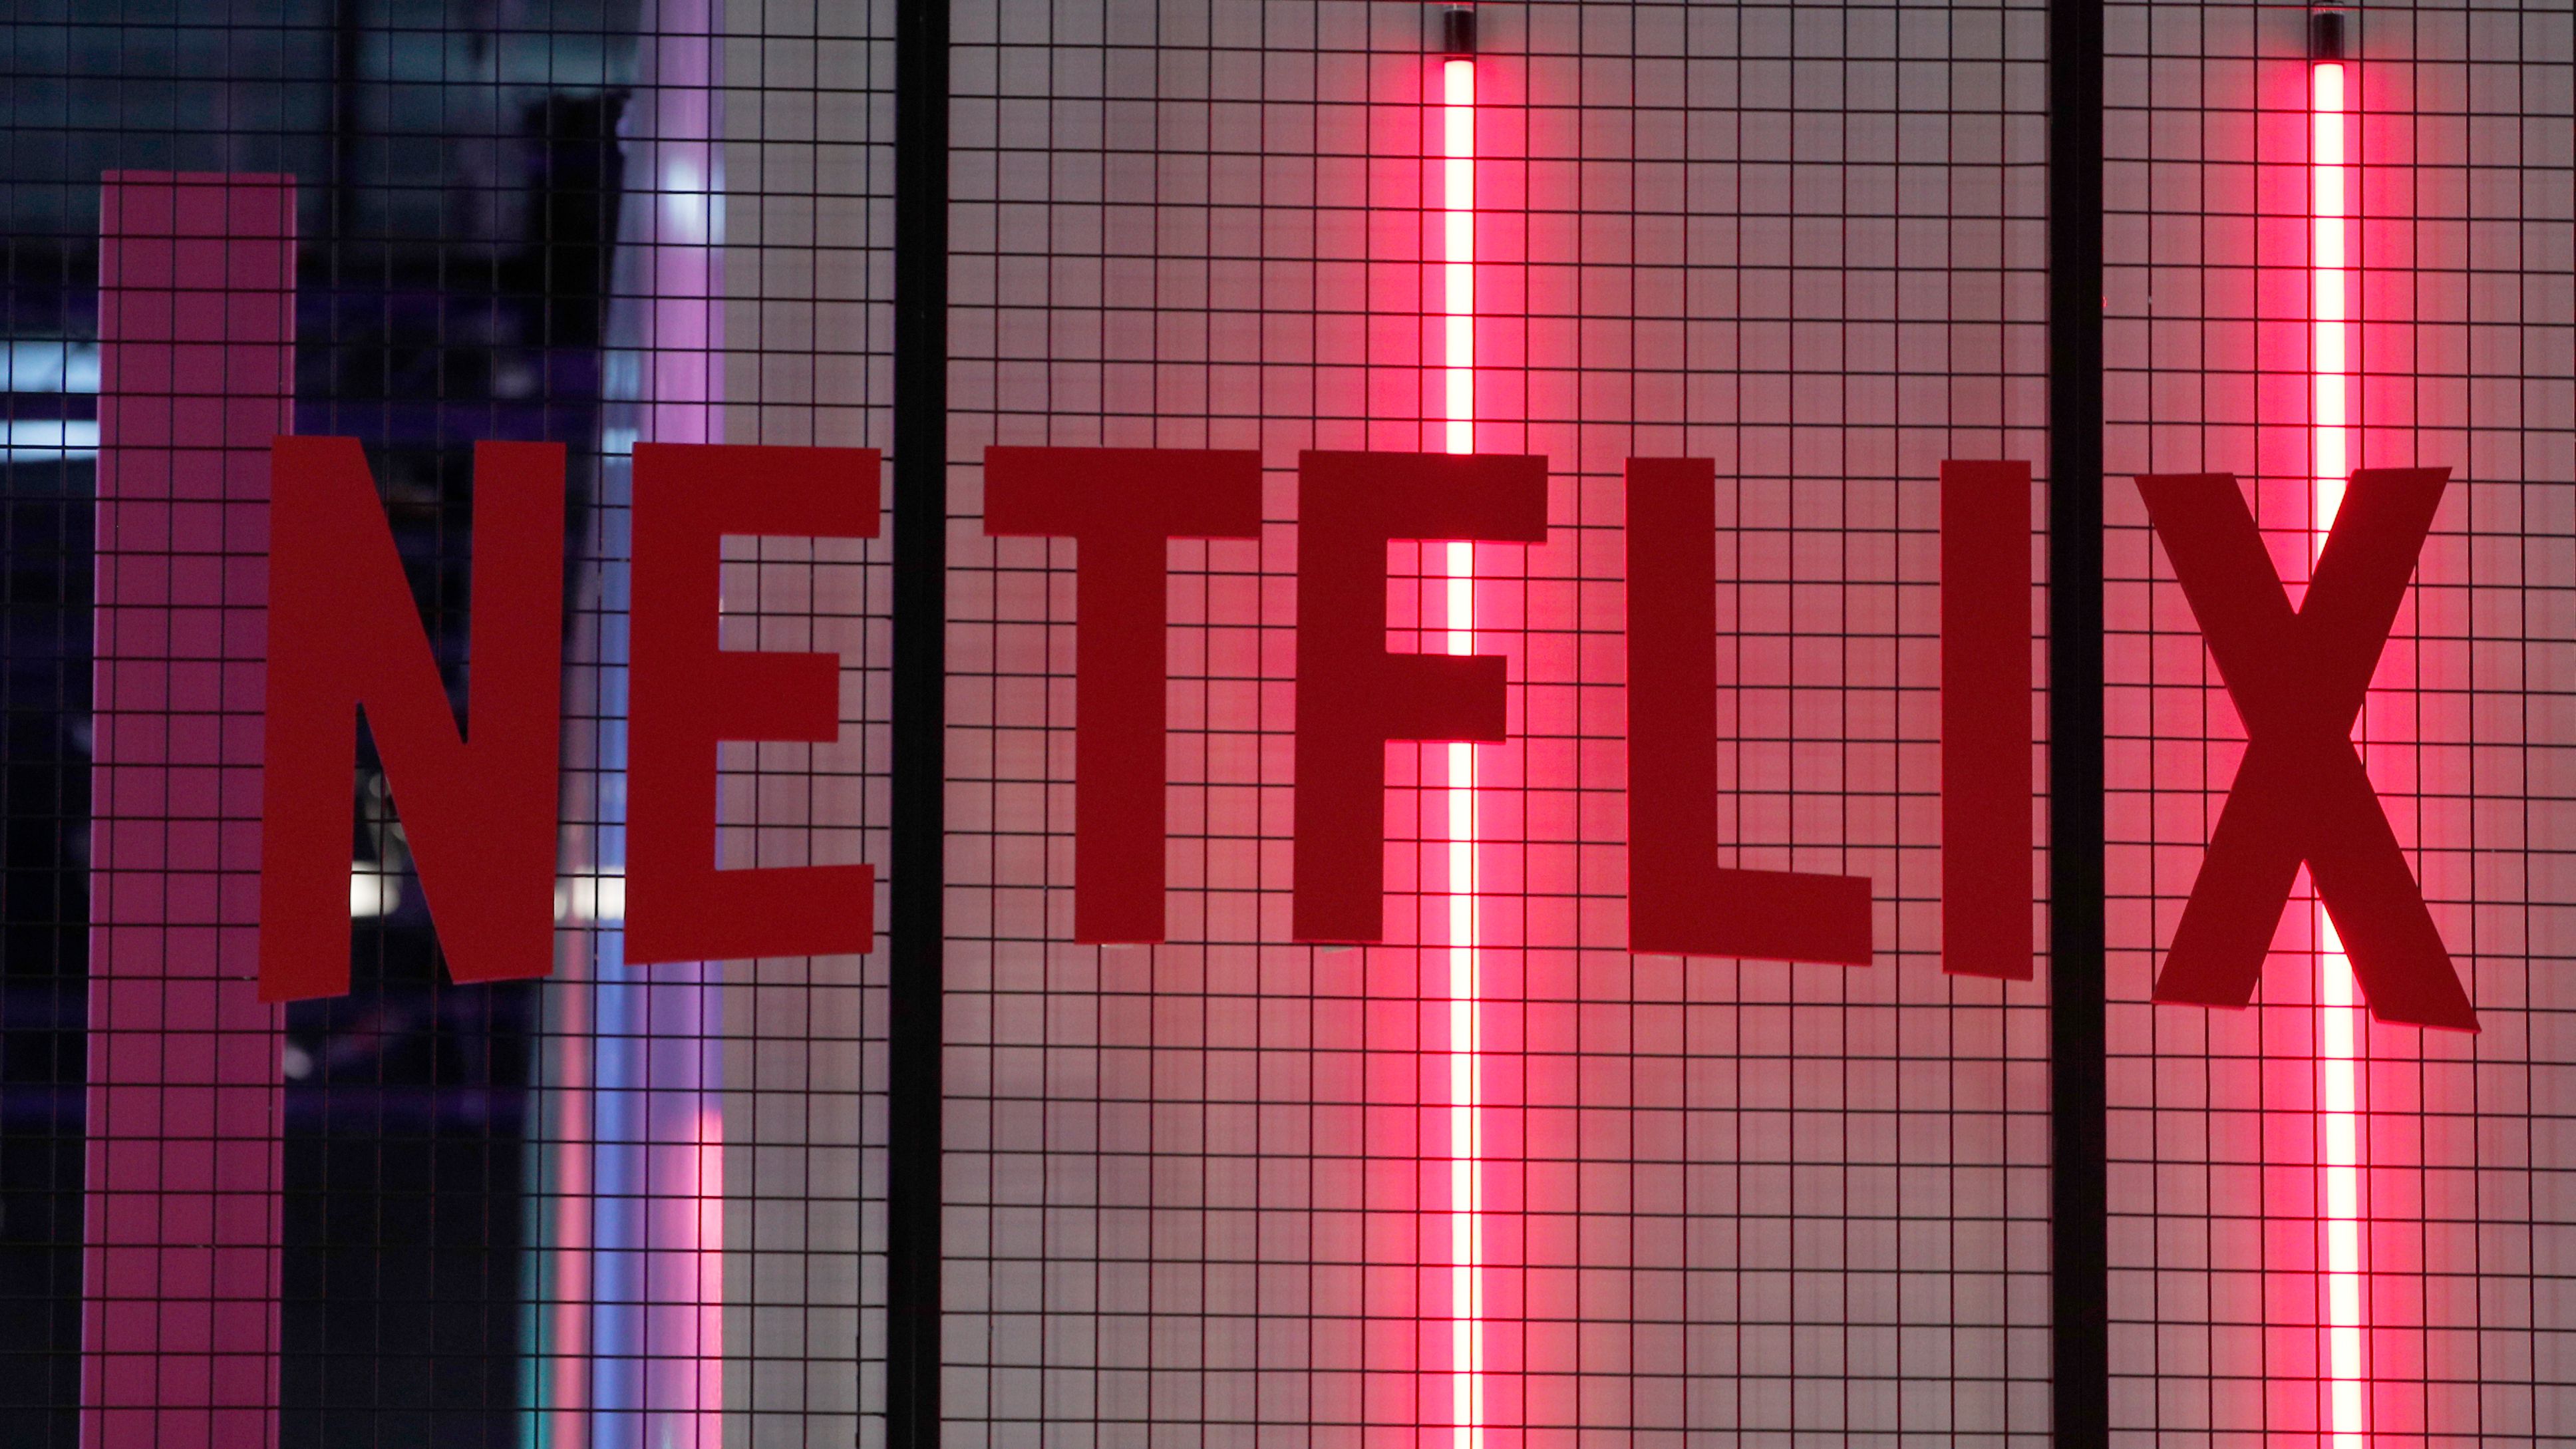 Golpe da Netflix: falso email pede dados pessoais para evitar cancelamento